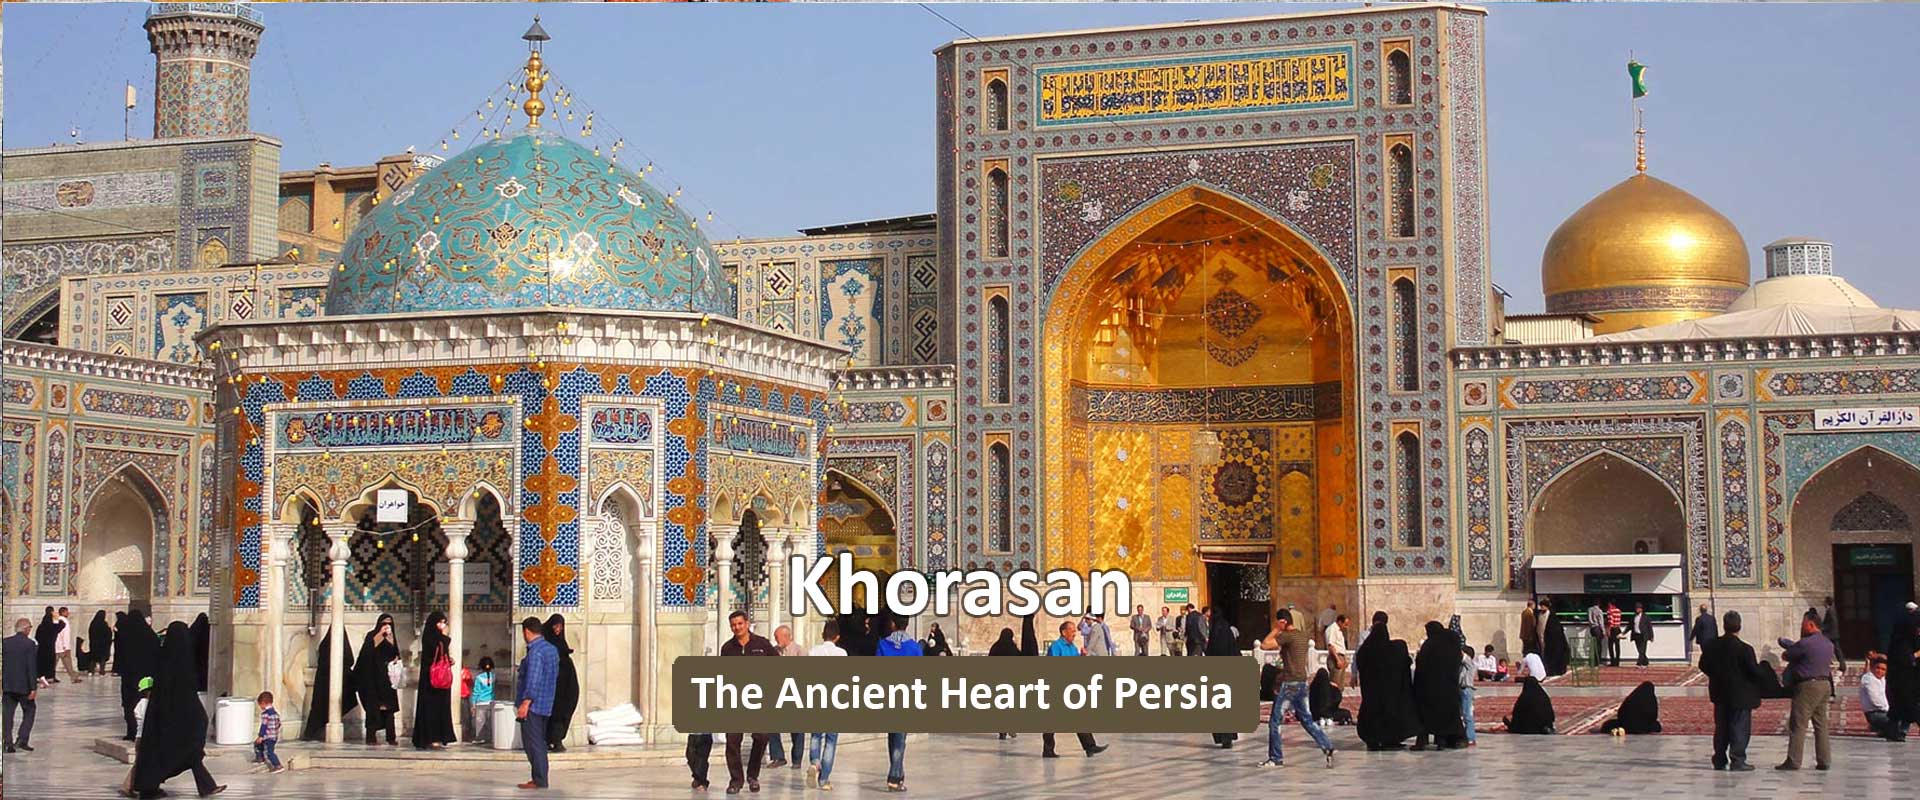 khorasan